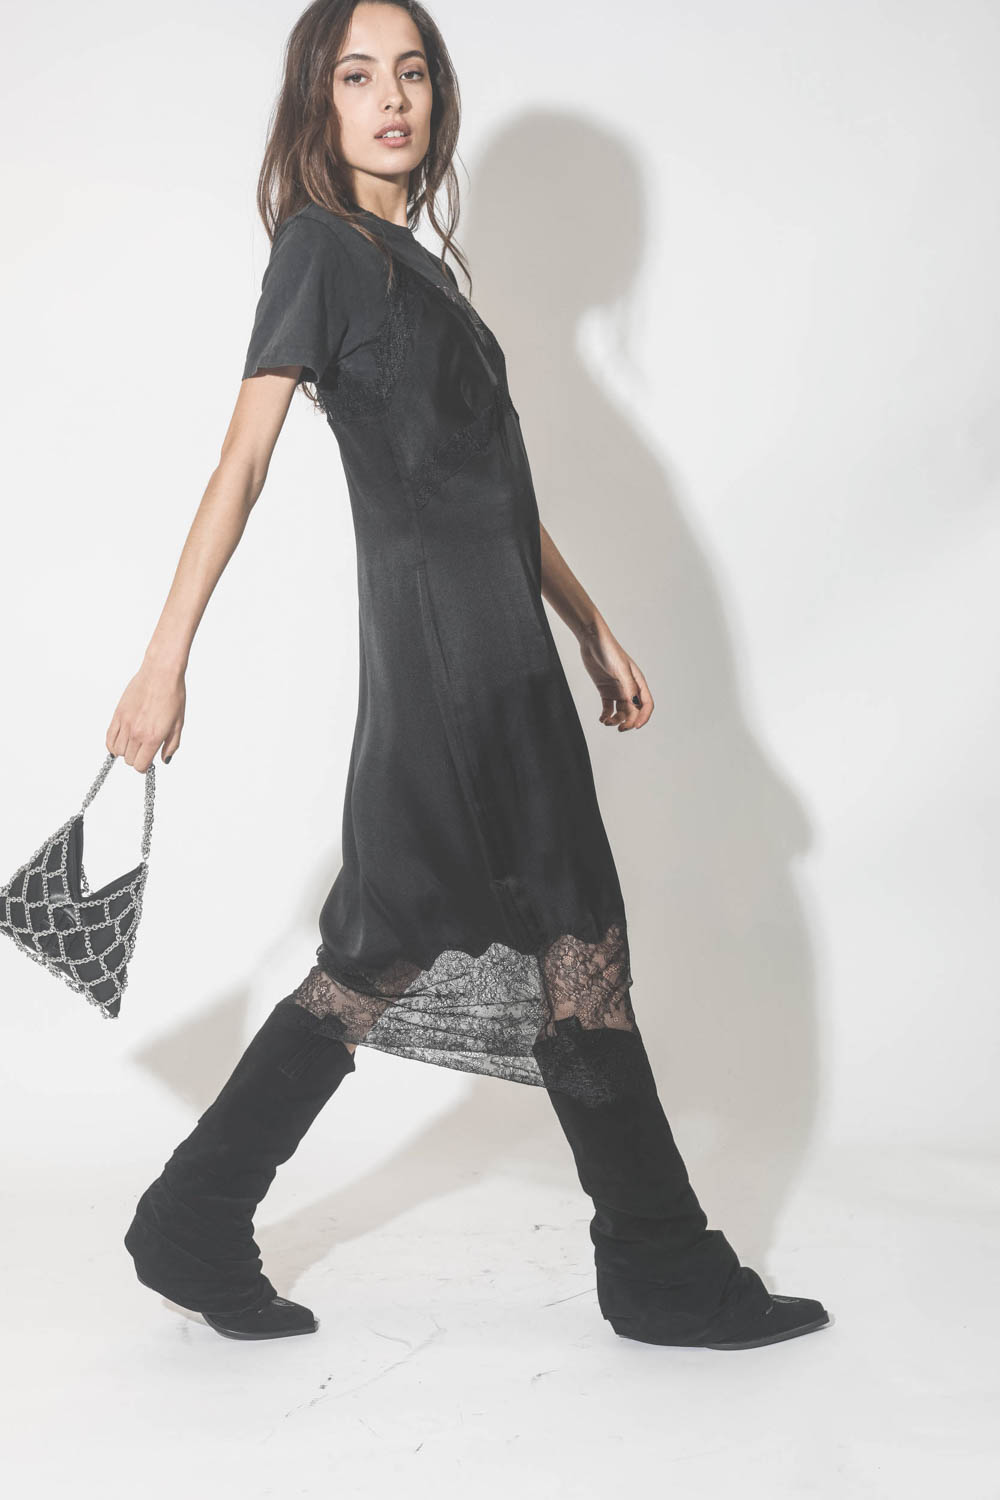 Robe fines bretelles en soie et dentelle noire Amélie Anine Bing. Porté de profil.